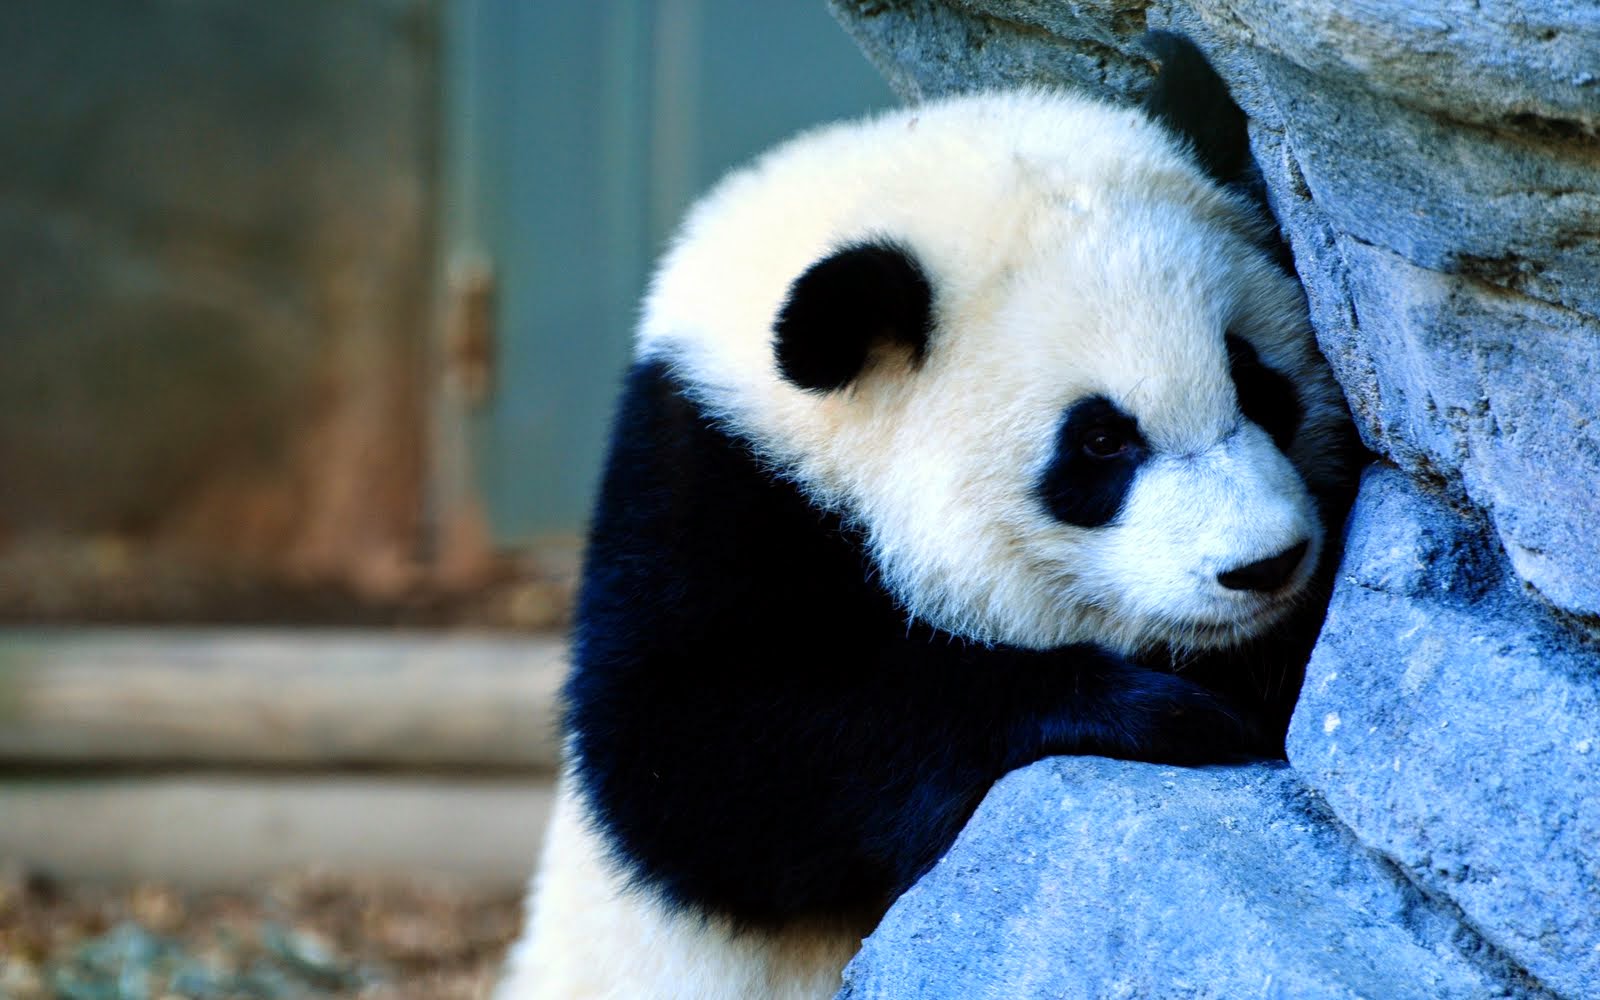 Foto Lucu Binatang  Panda  Terbaru Display Picture Unik